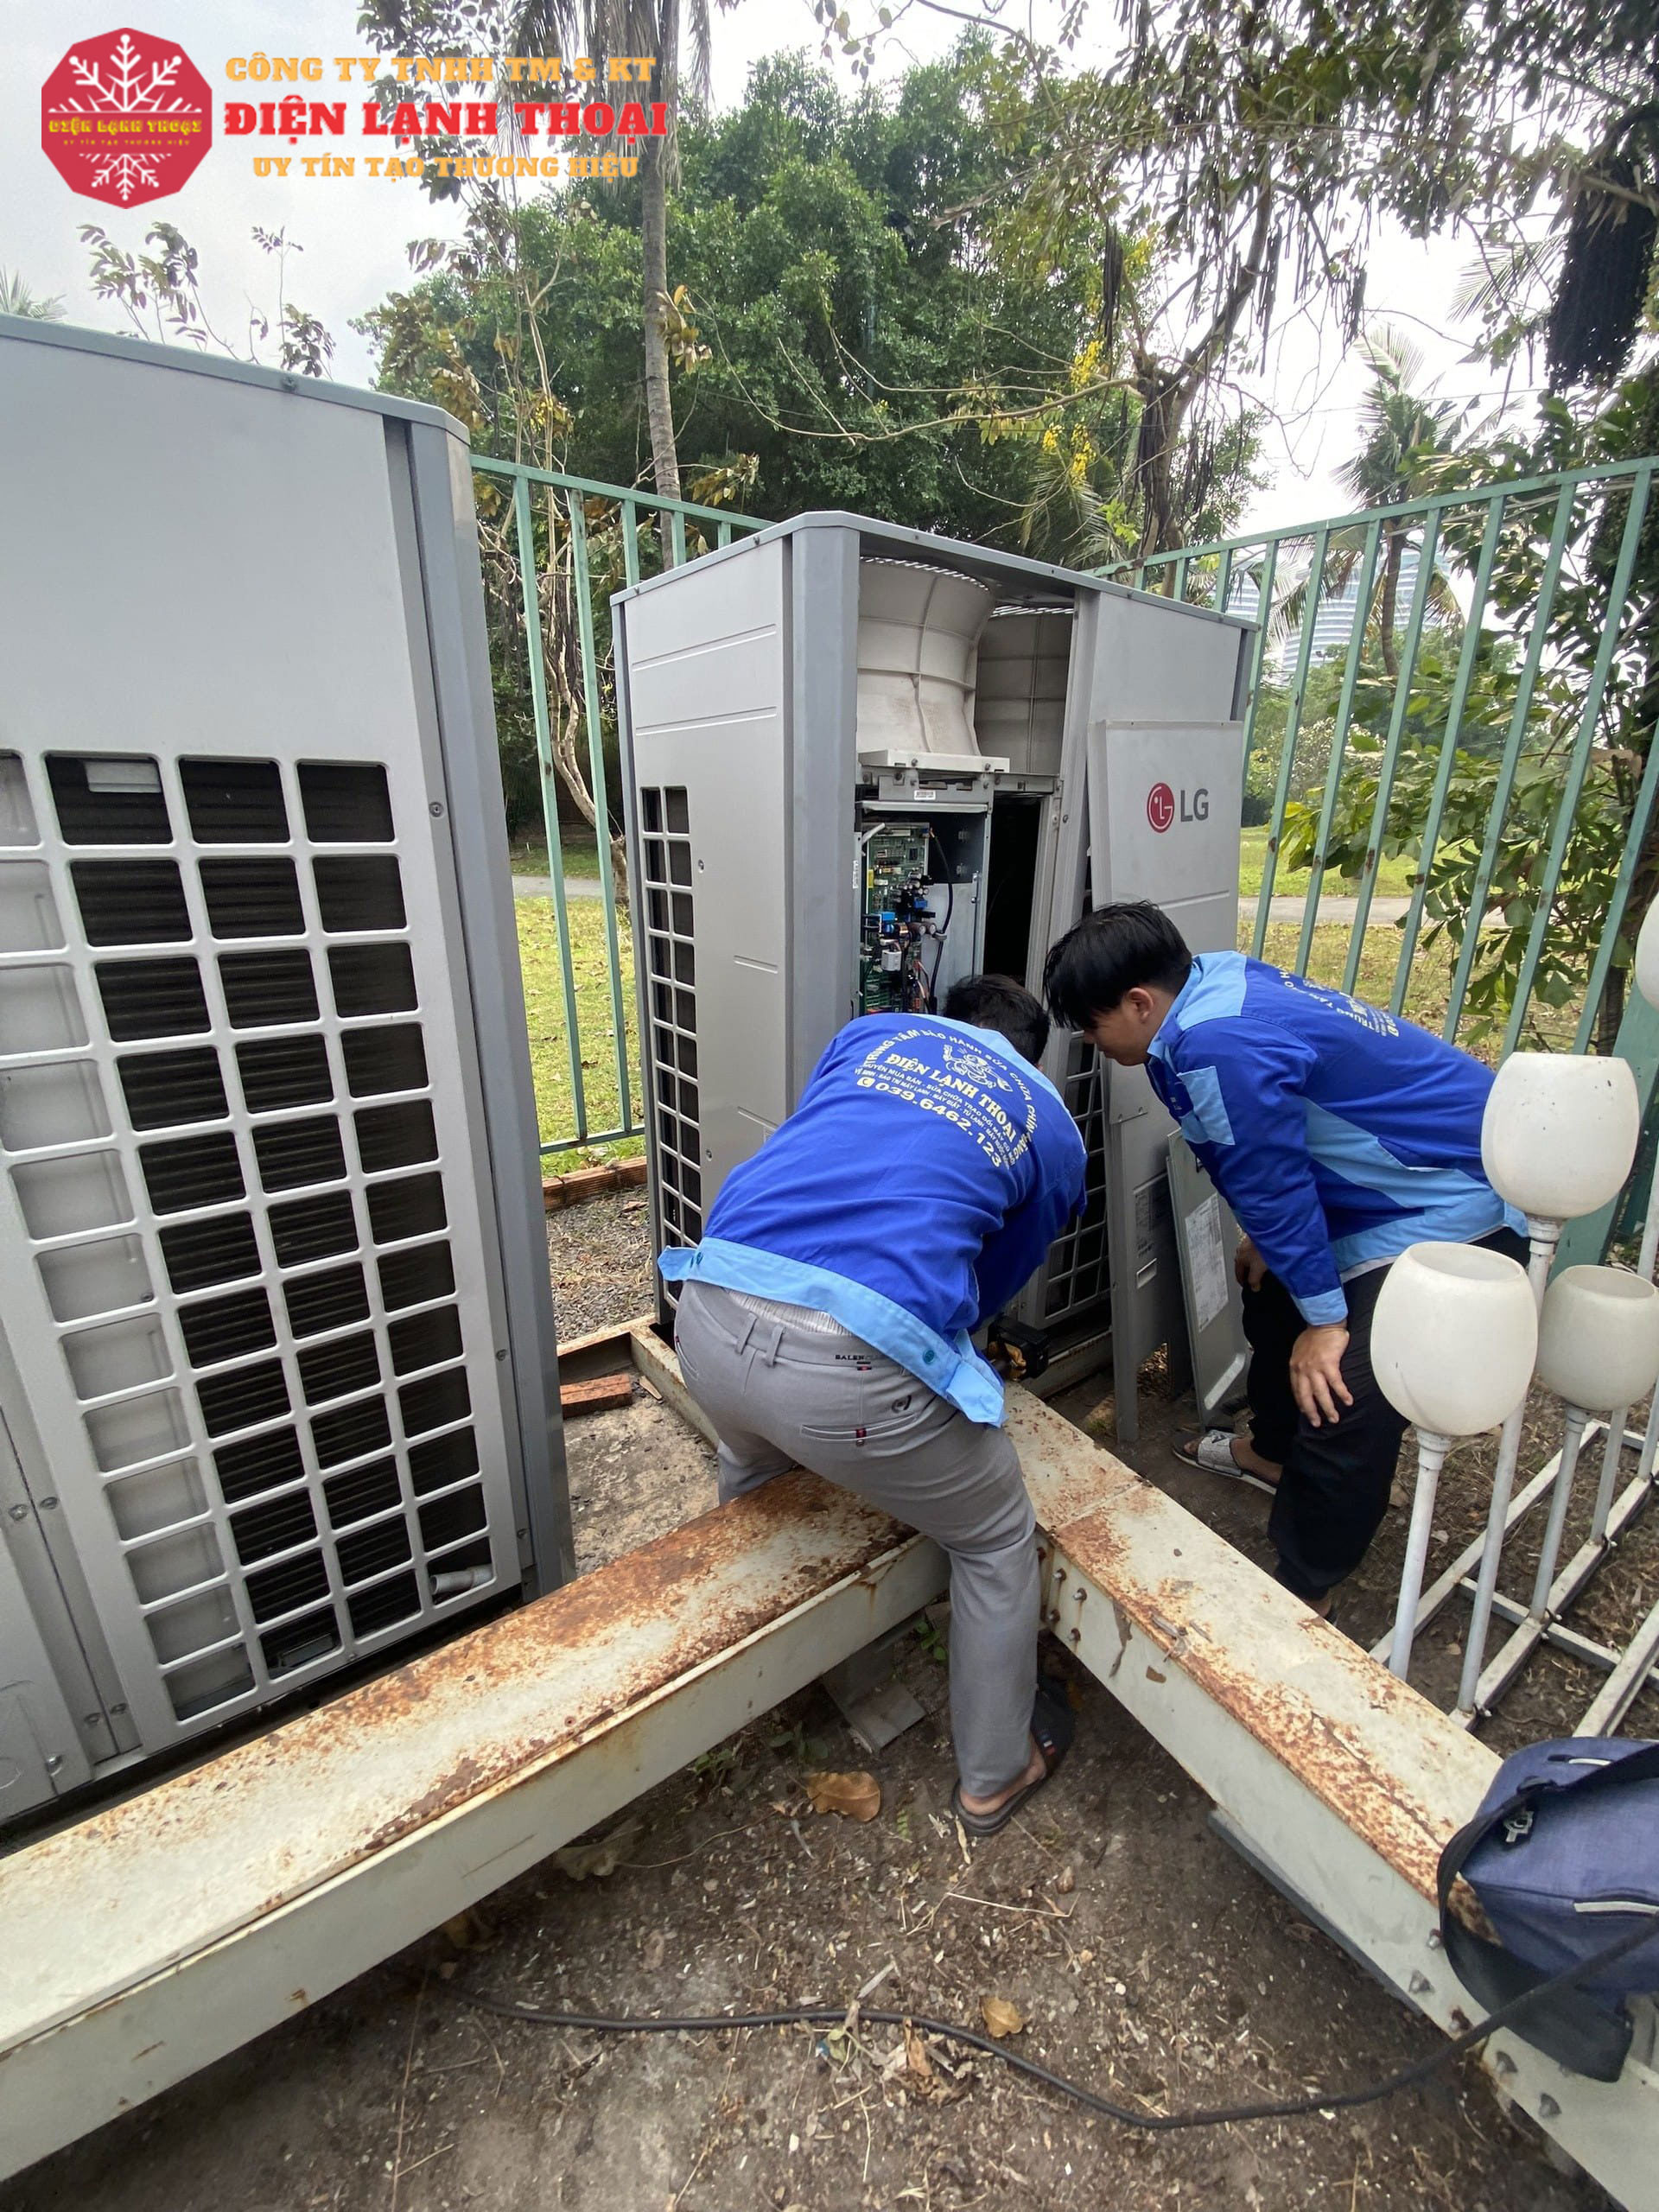 Điện Lạnh Thoại chuyên cung cấp dịch vụ vệ sinh máy lạnh trung tâm VRV-VRF uy tín và đảm bảo chất lượng